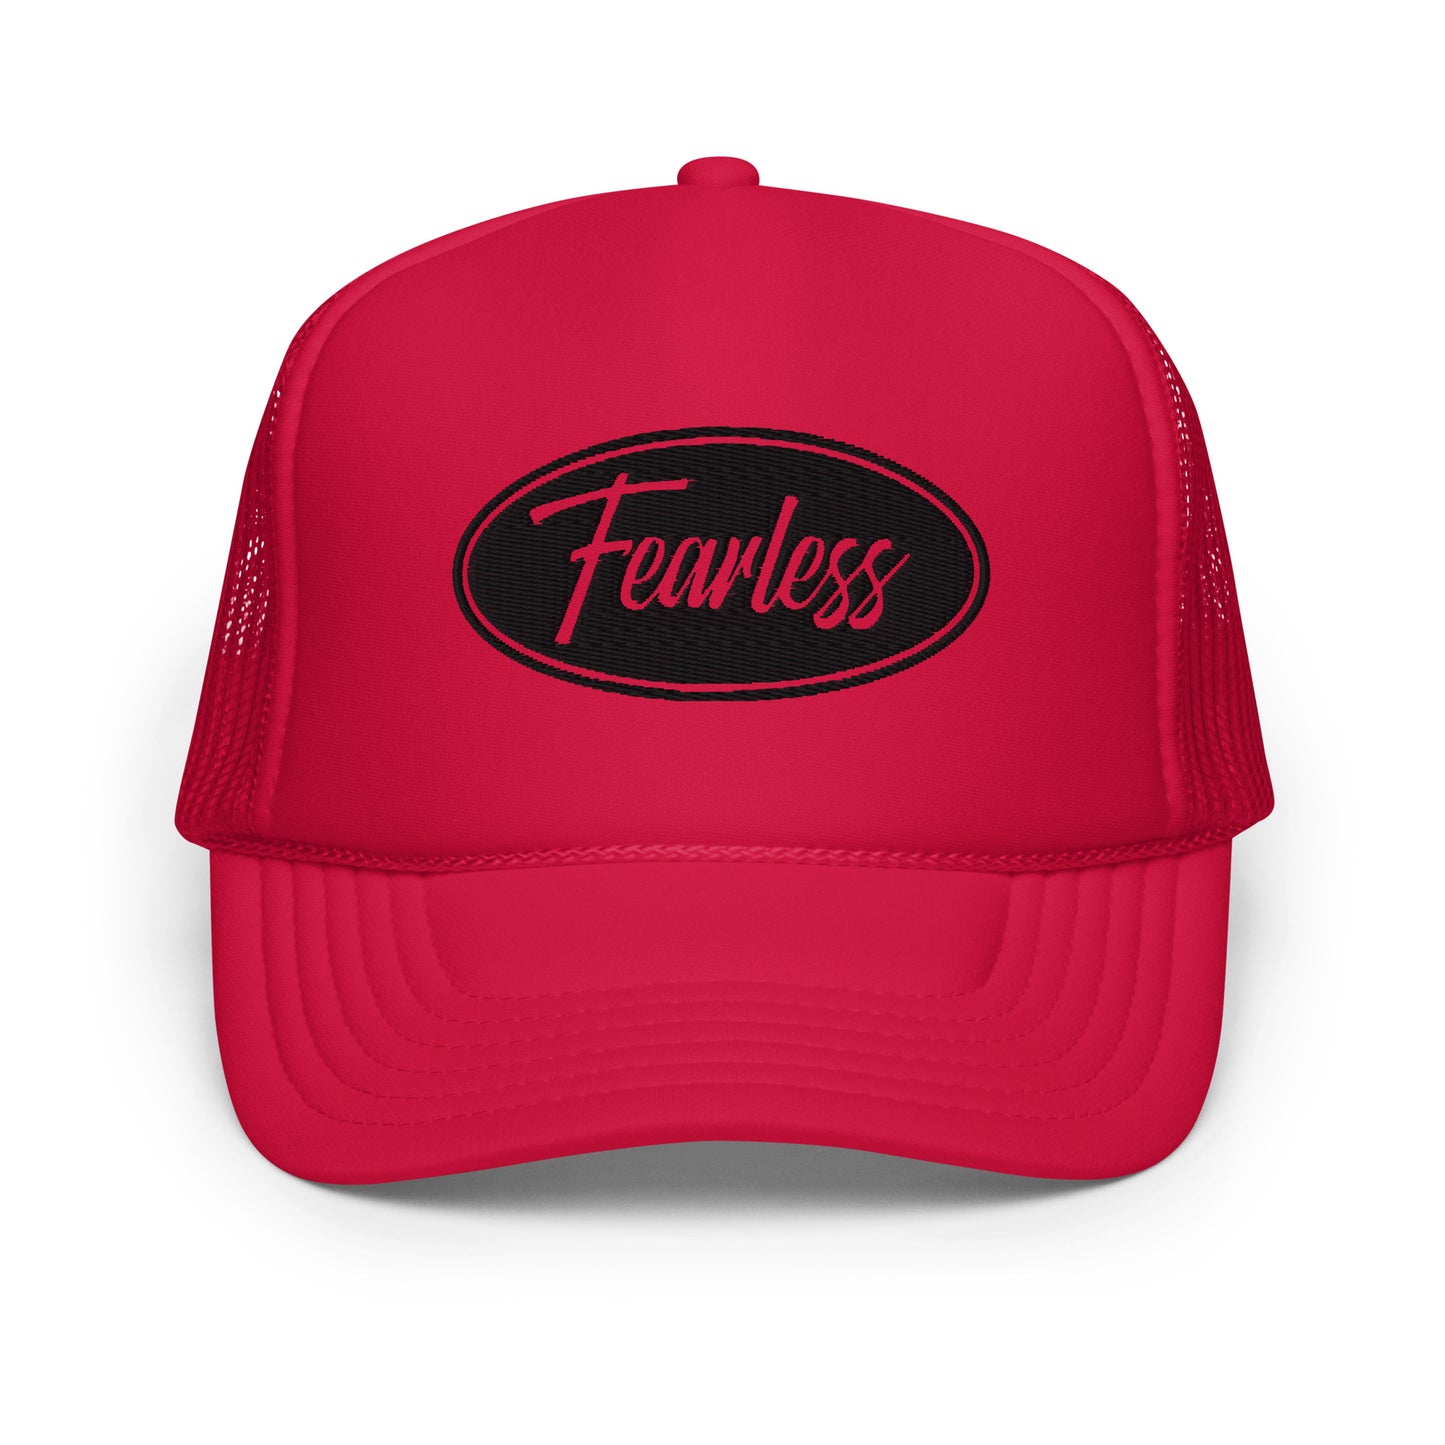 "Fearless" Foam trucker hat